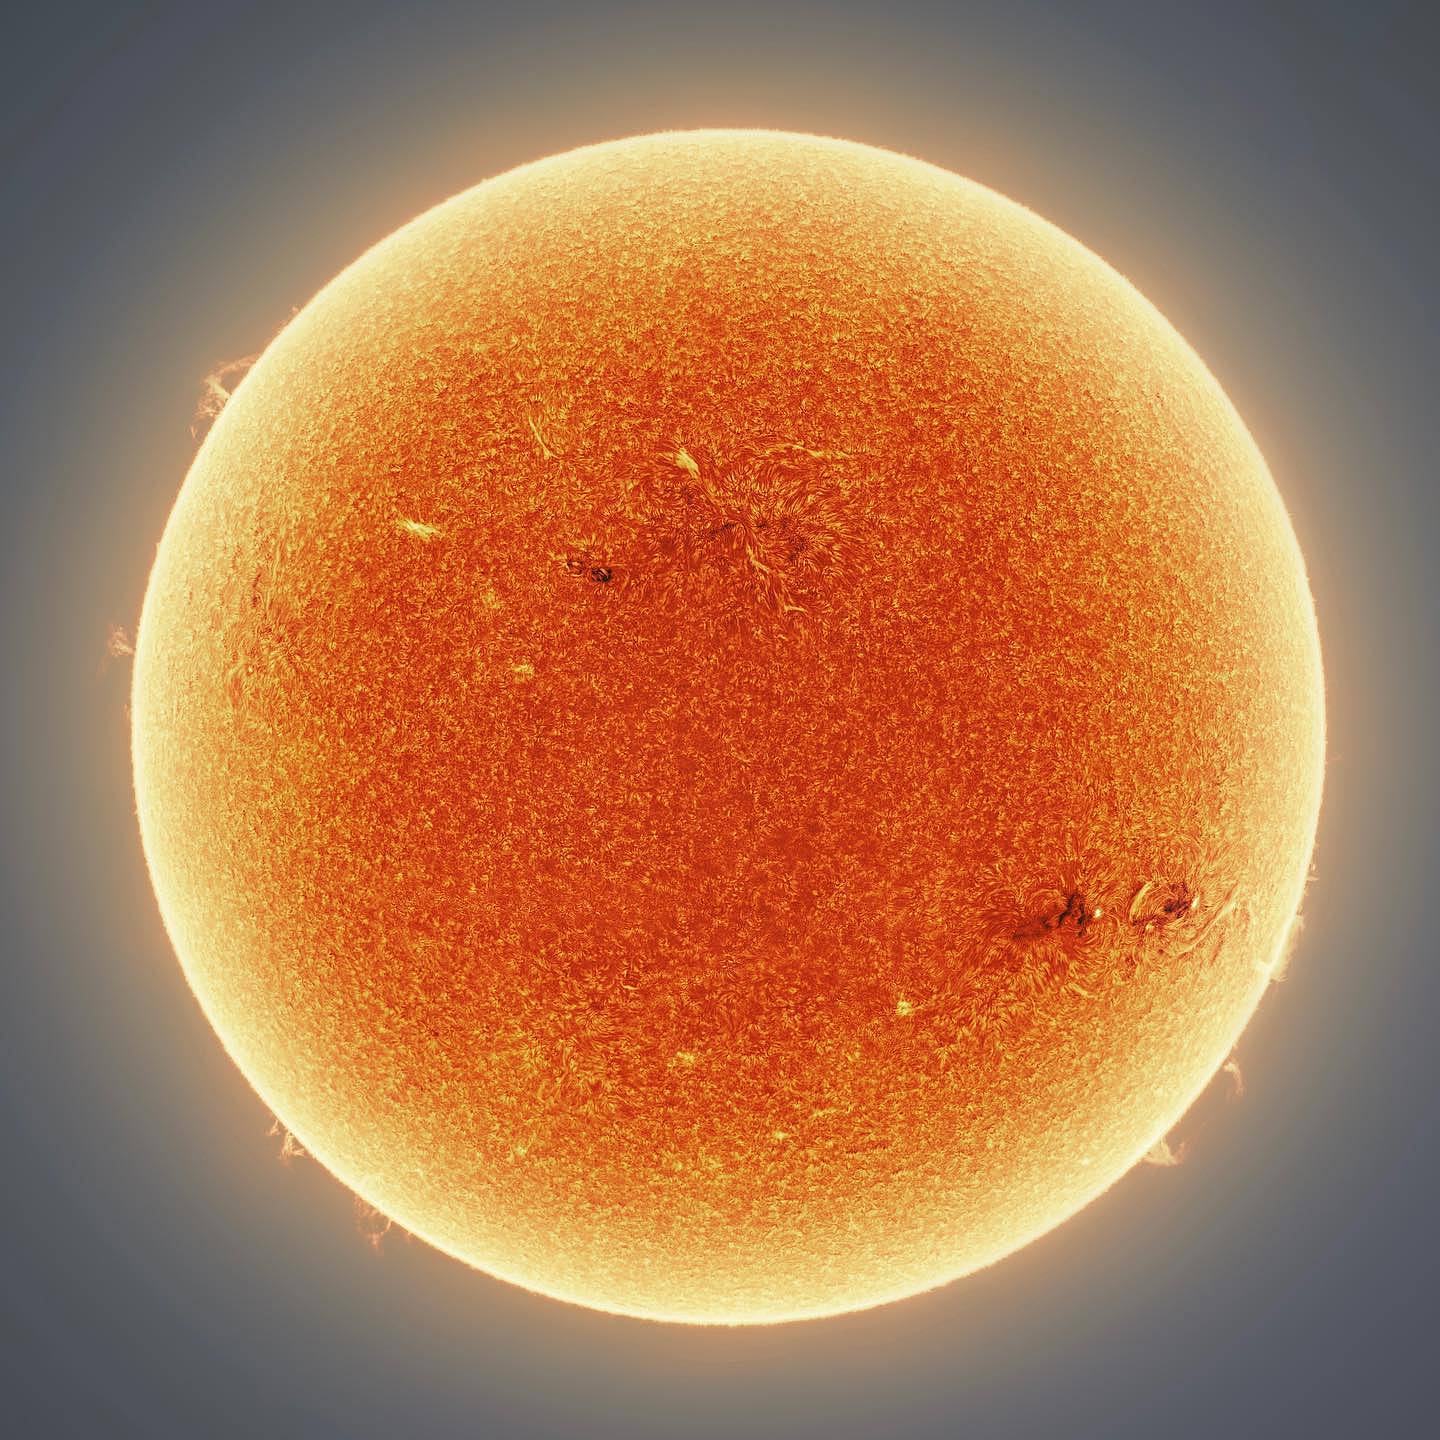 天文摄影家用15万张图制作出一张壮观的太阳照 - 6